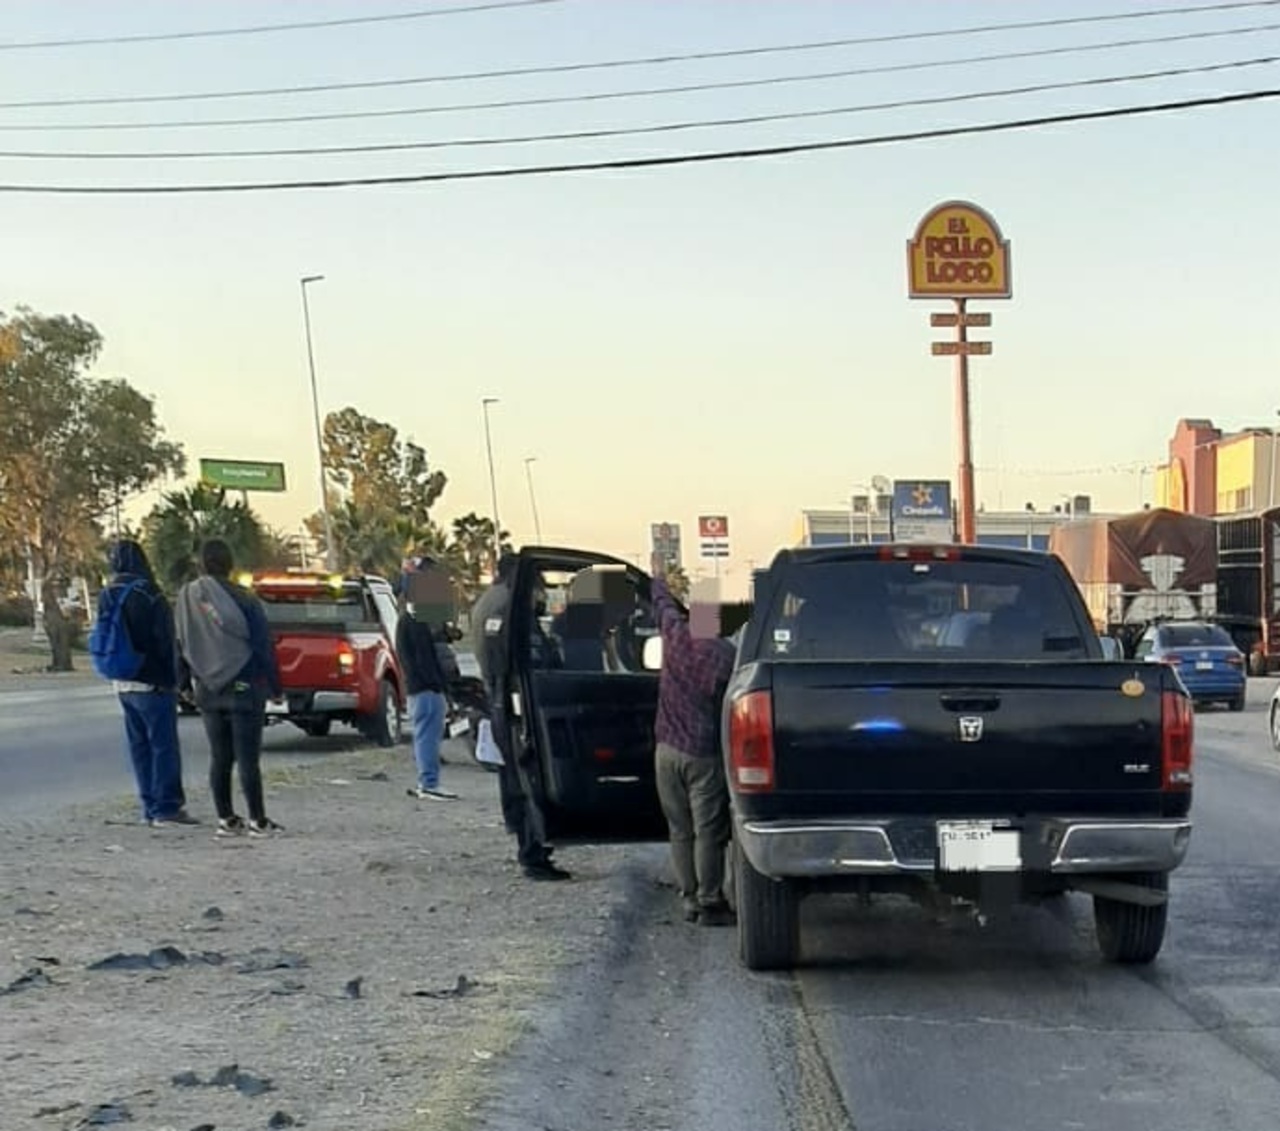 El hoy fallecido fue impactado por una camioneta sobre el bulevar Ejército Mexicano.